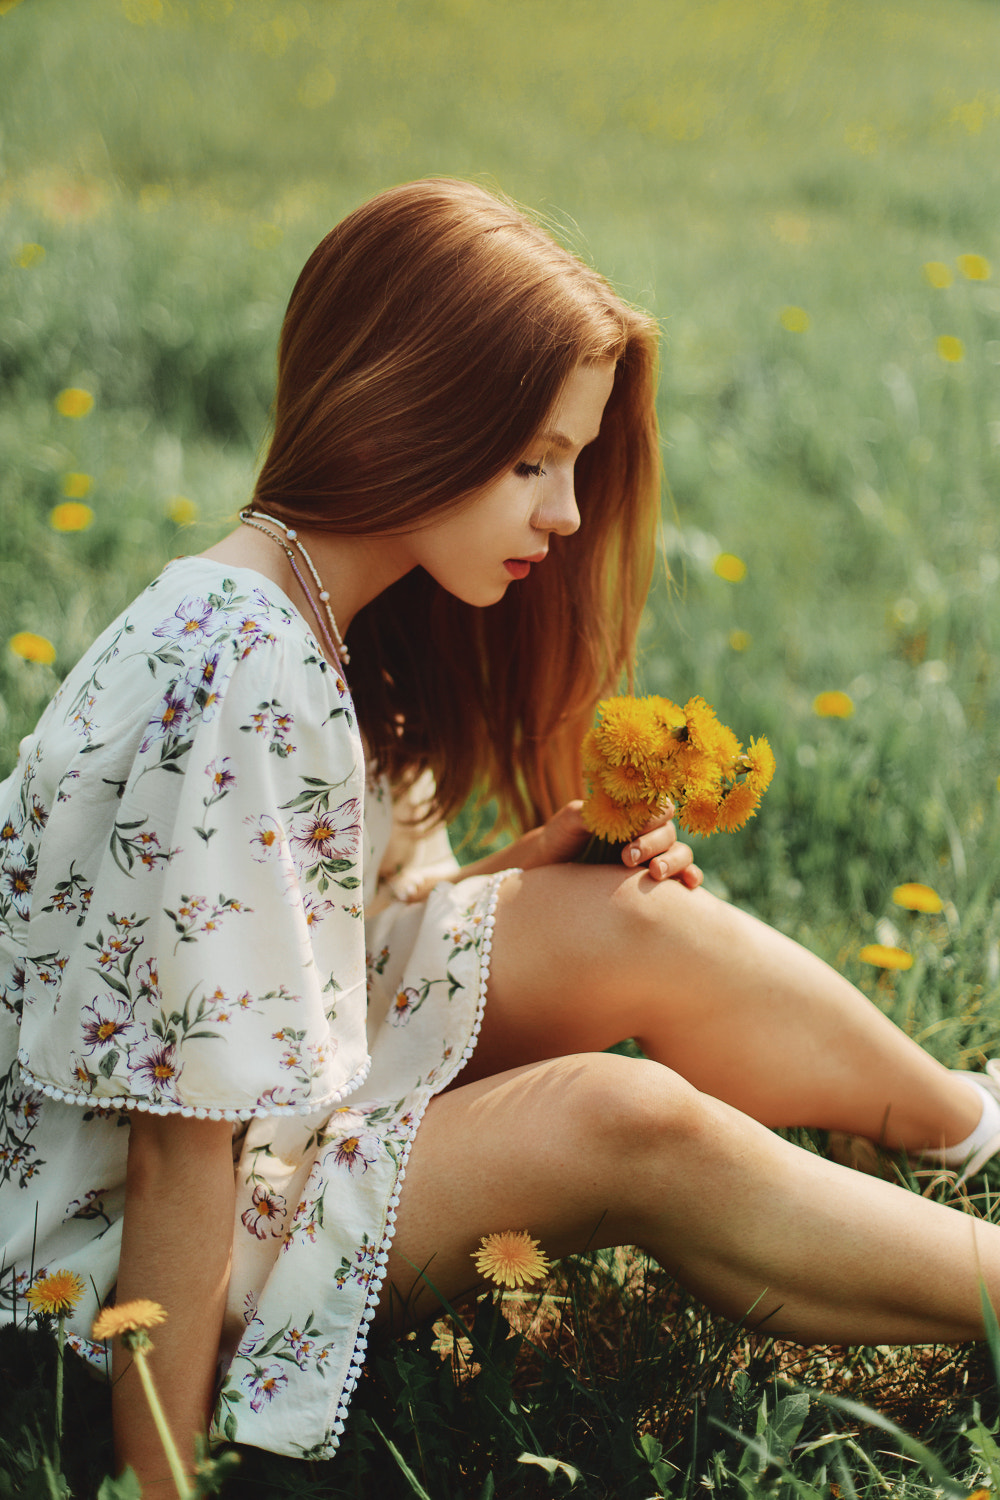 Anton Zhilin Women Redhead Flowers Field Makeup Model Legs Women Outdoors 1000x1500